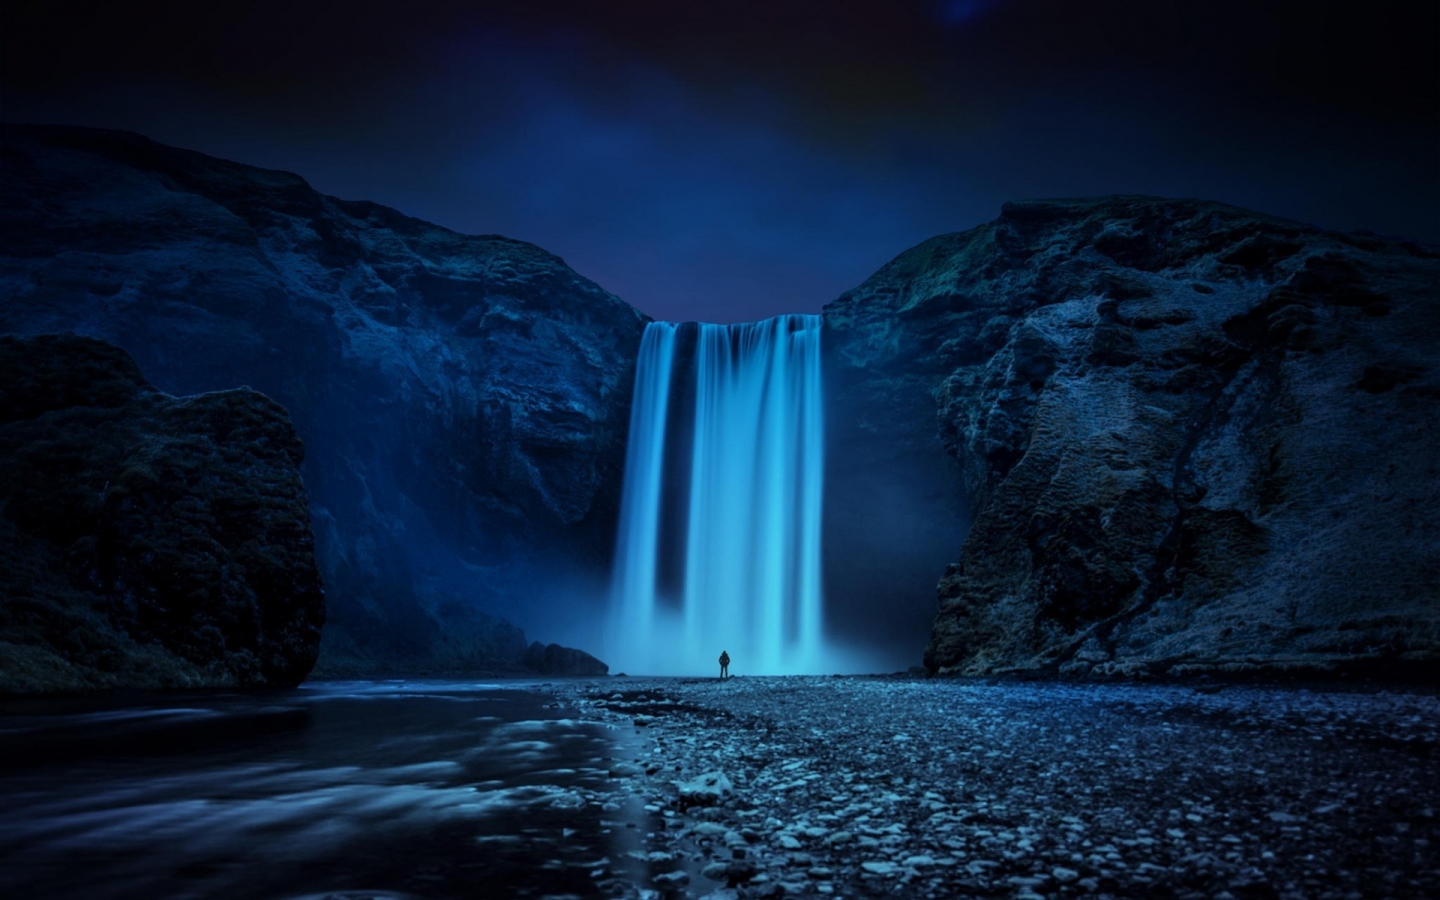 Beautiful Skogafoss Waterfall for 1440 x 900 widescreen resolution